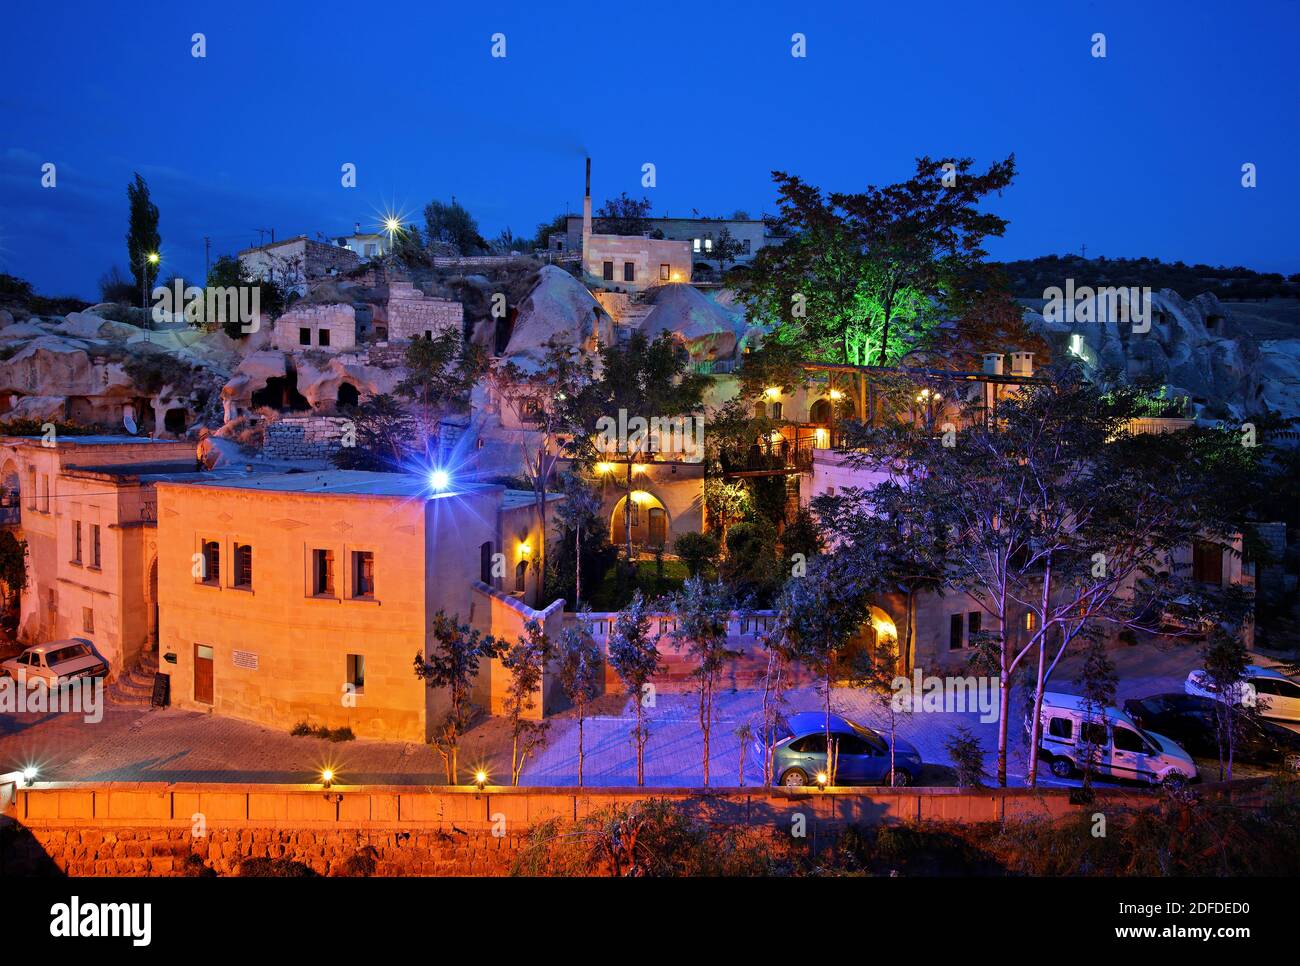 Vue de nuit de l'hôtel grotte de Gamirasu dans le village d'Ayvali (entre Urgup et Sinassos), Nevsehir, Cappadoce, Turquie. Banque D'Images